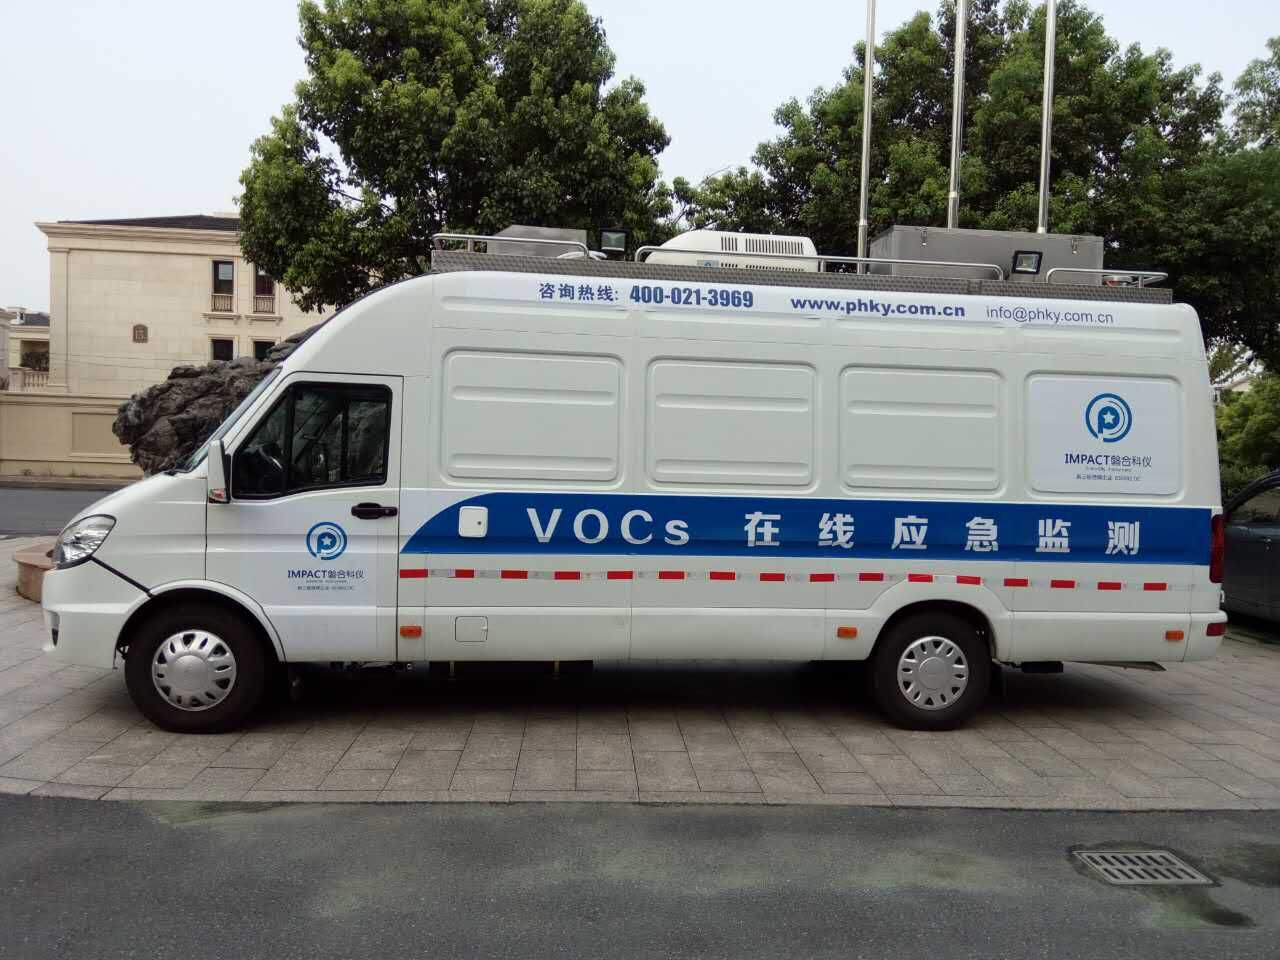 “VOCs移动监测车”问世 澳门金威尼斯游戏迈上技术新台阶——中国环保在线网对澳门金威尼斯游戏的深度报道